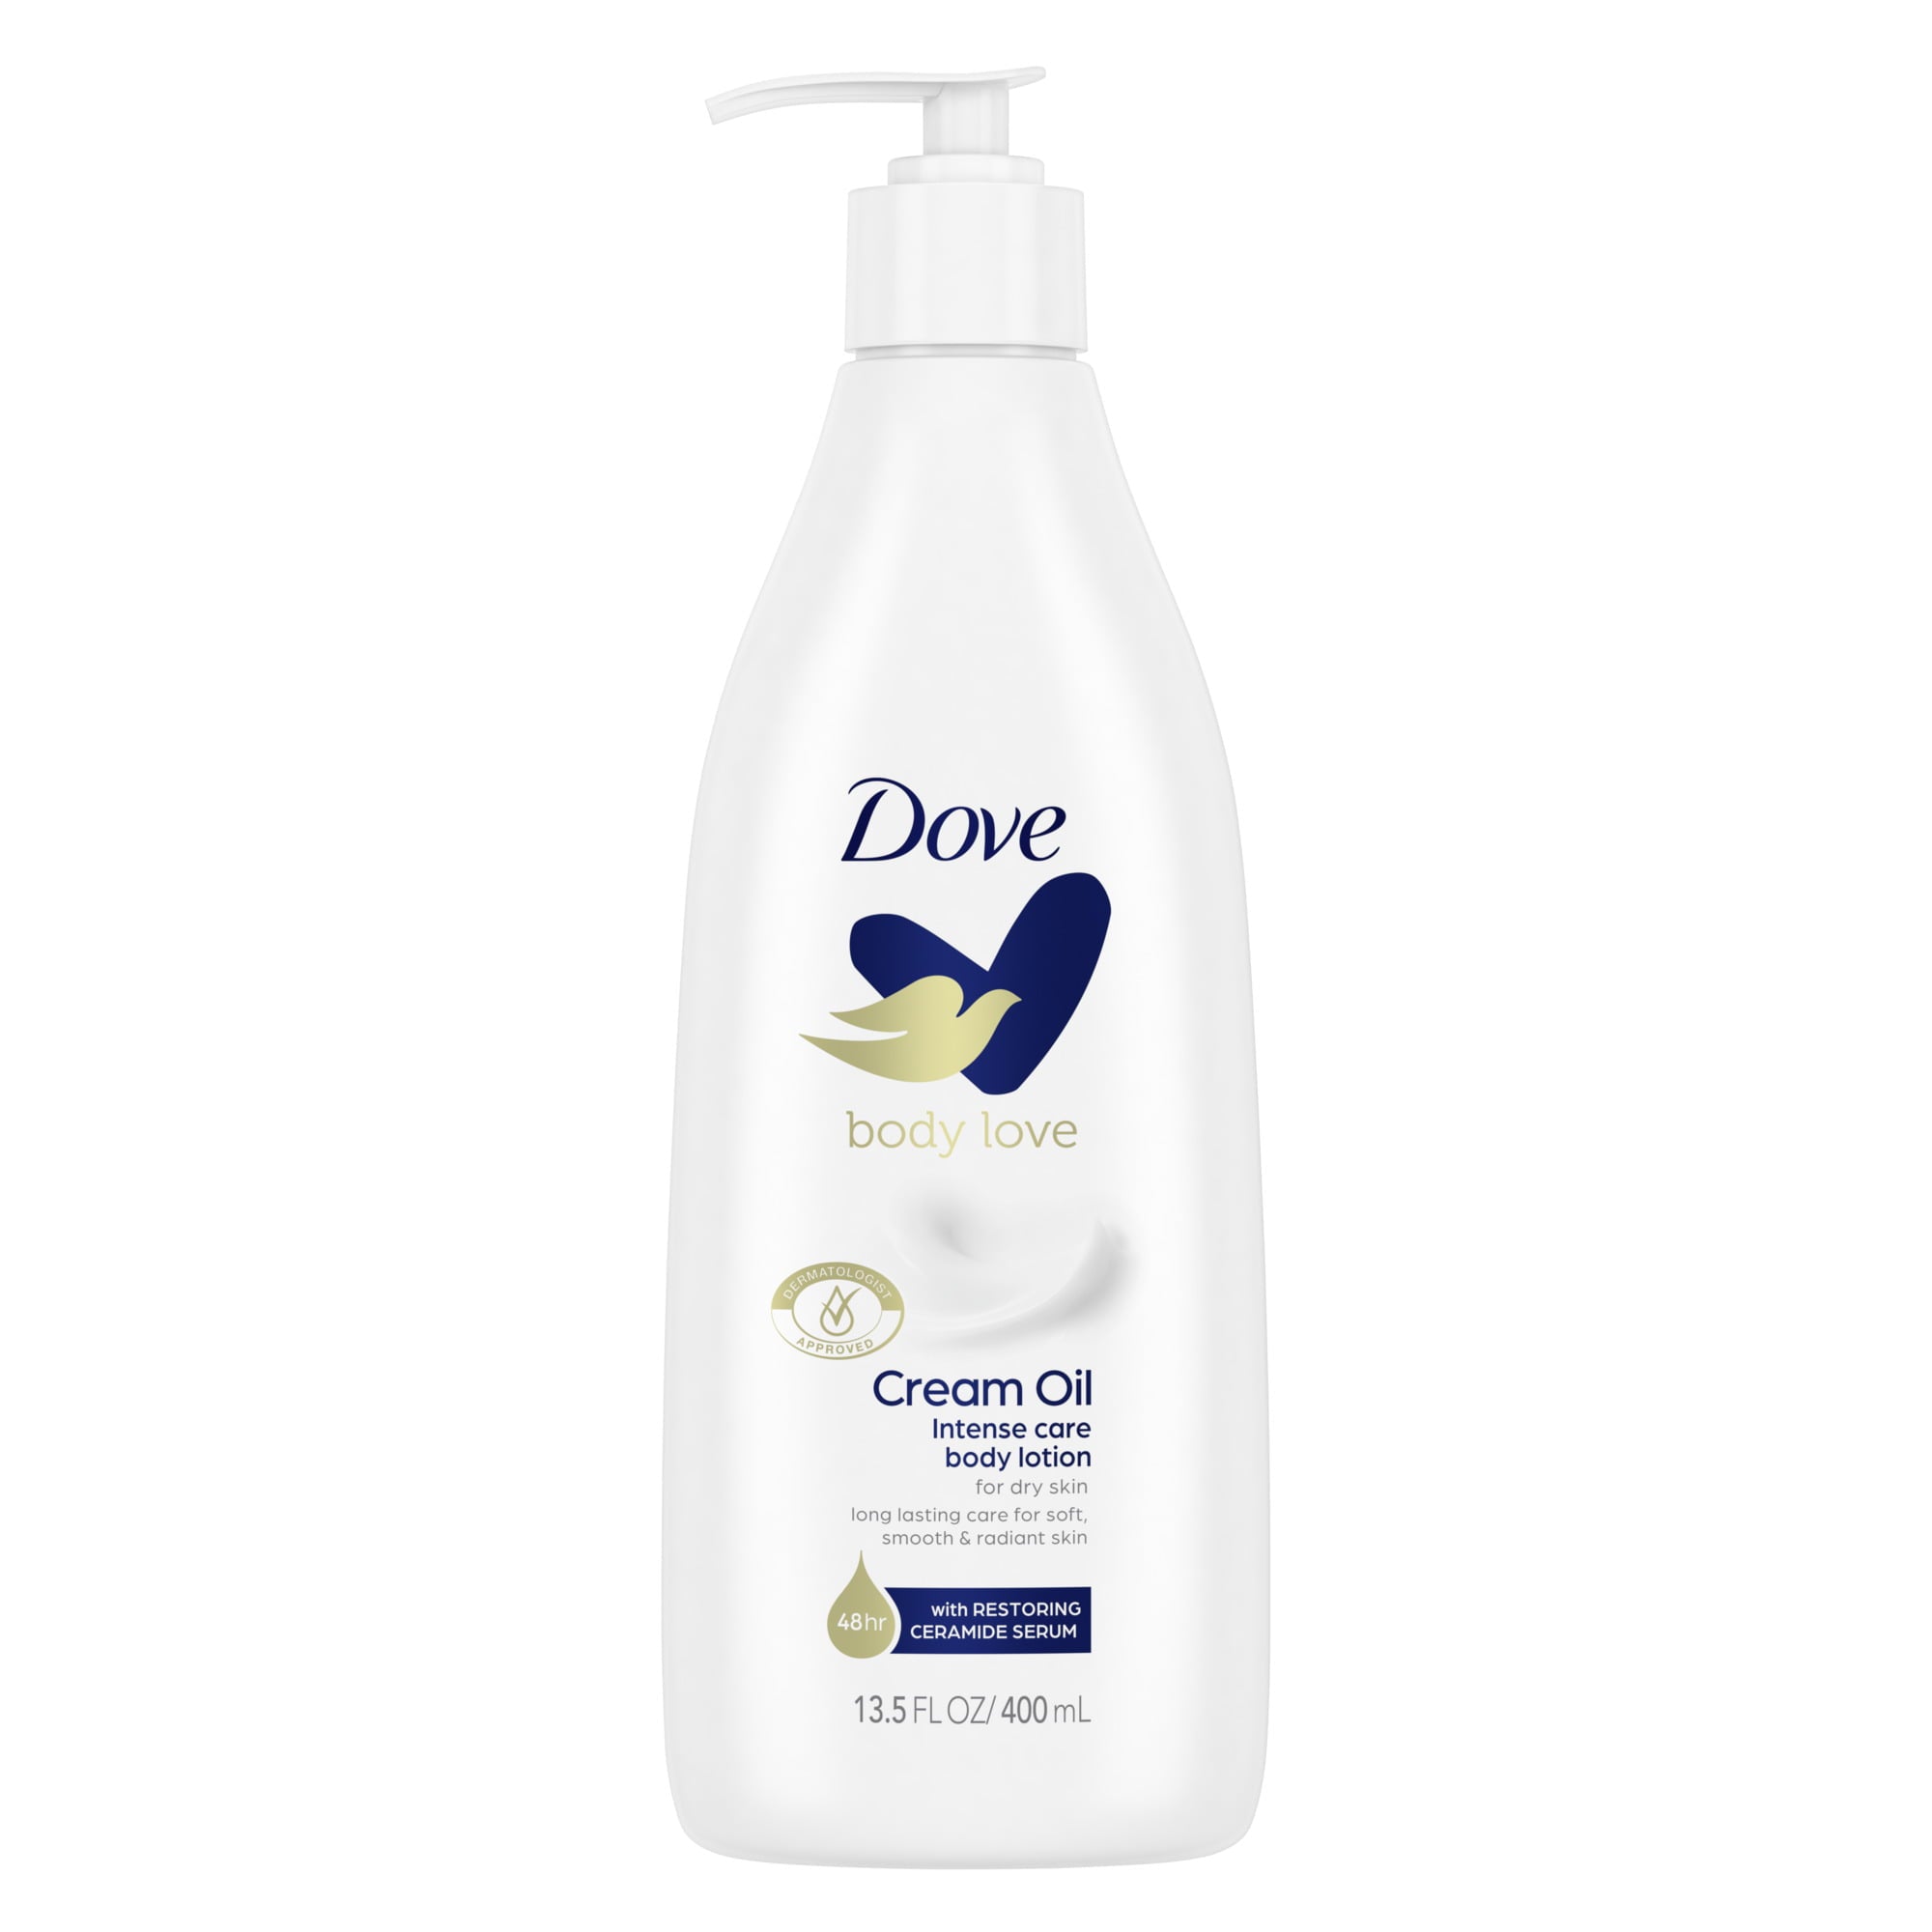 Dove Body Love Intense Care Non Greasy Body Lotion Cream Oil for Dry Skin, 13.5 fl oz | MTTS410